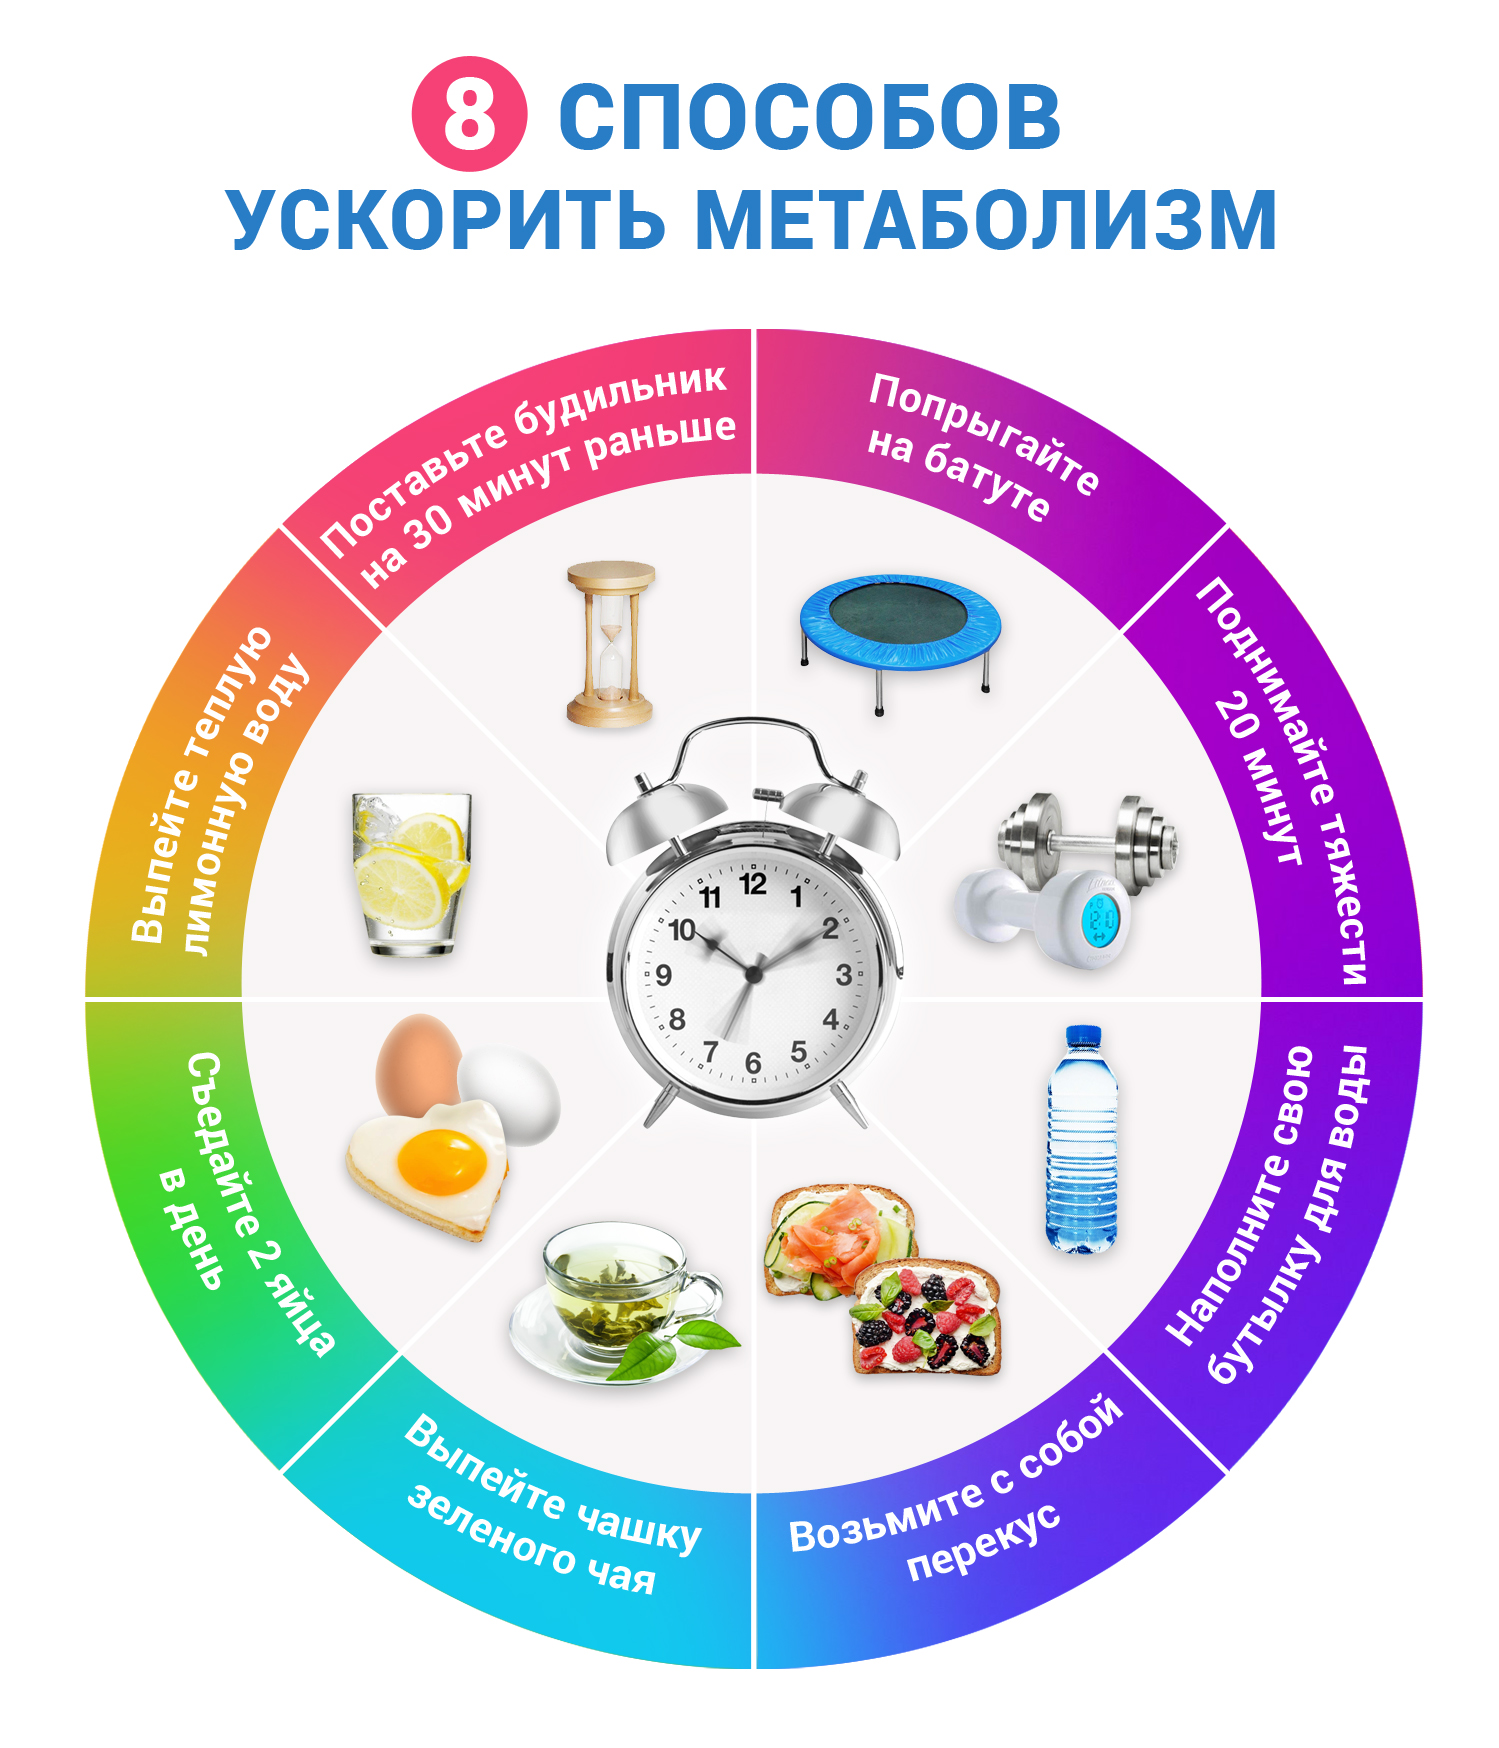 Метаболизм: как ускорить, причины замедления, продукты чтобы улучшить обмен веществ